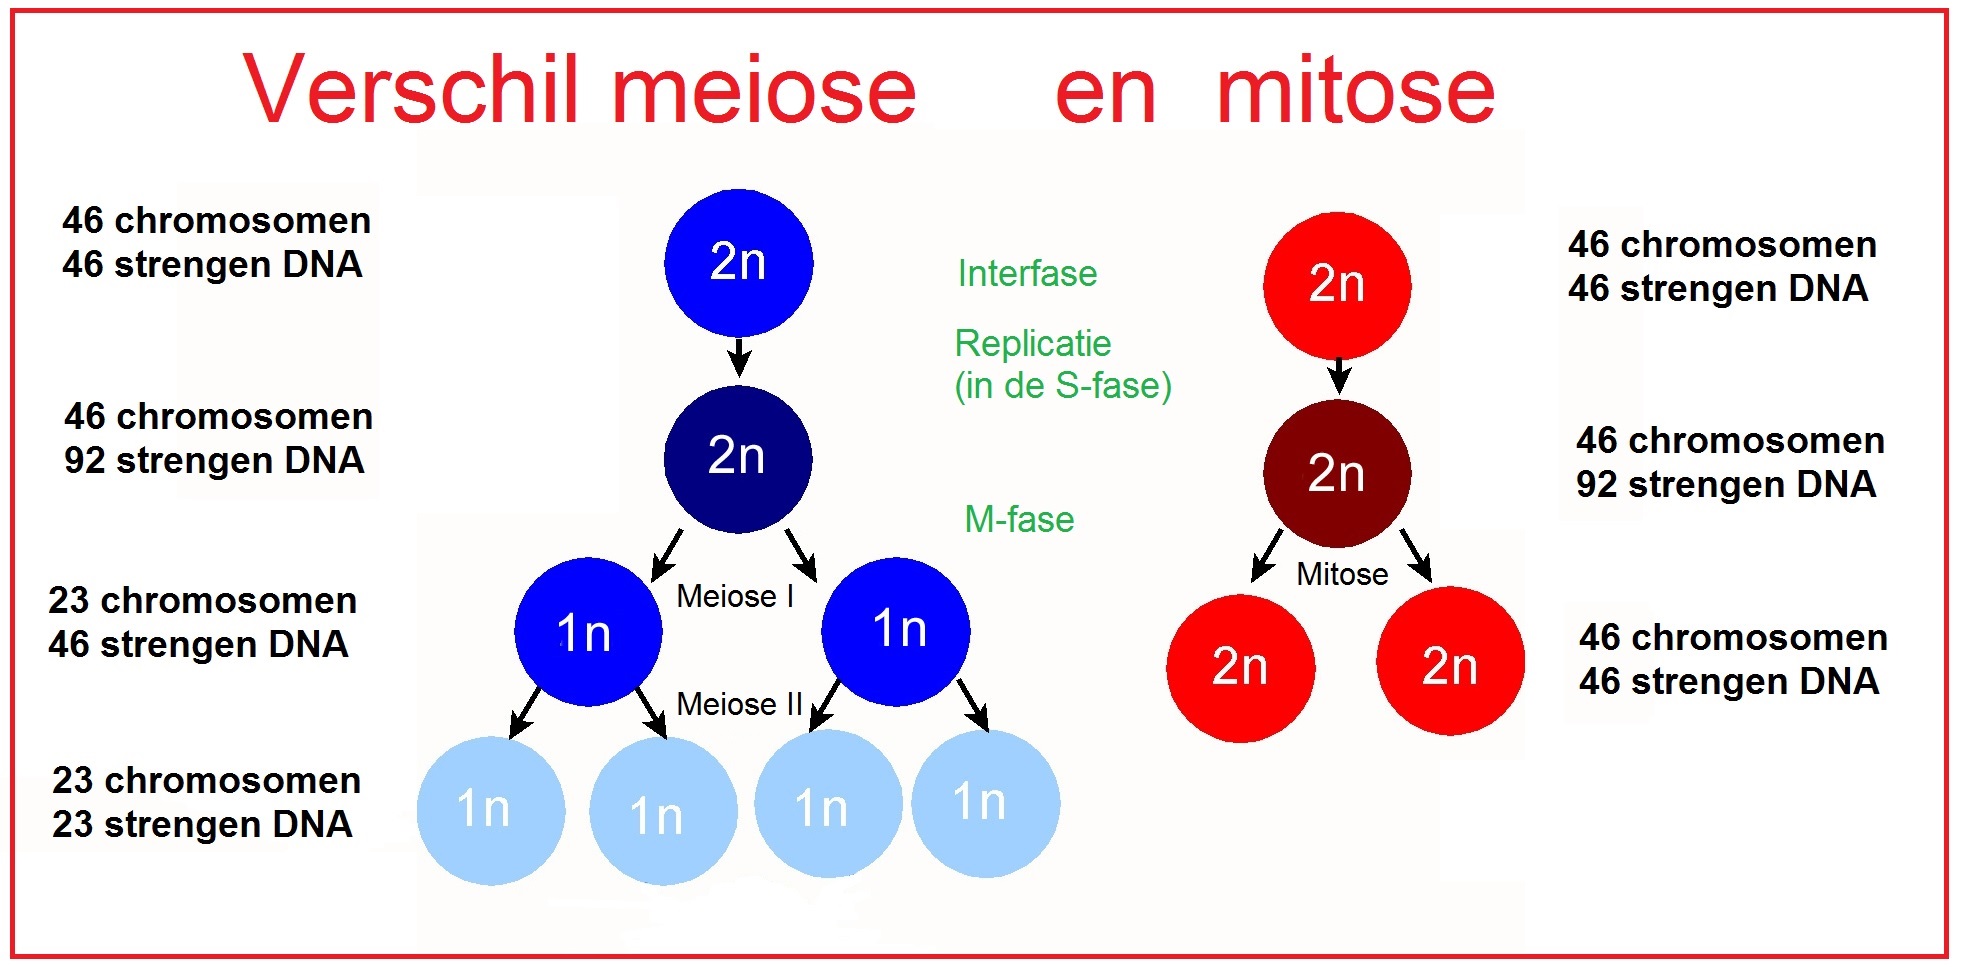 Verschillen in hoeveelheden DNA tussen mitose en de meiose. 